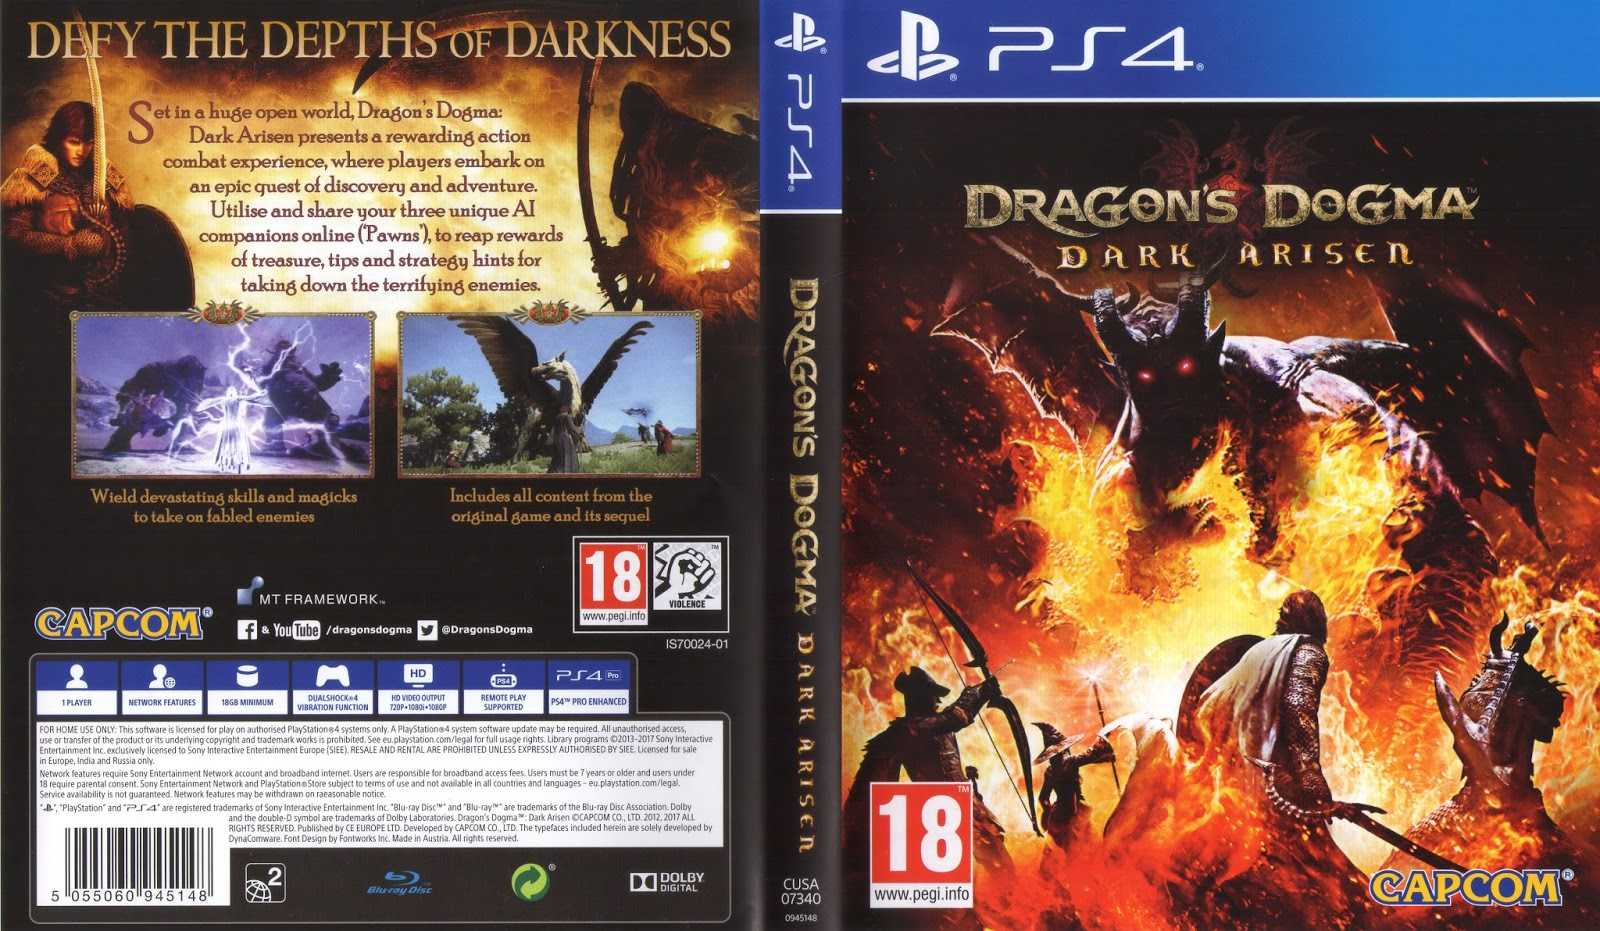 Dragon's dogma: dark arisen (русская версия) скачать бесплатно игру